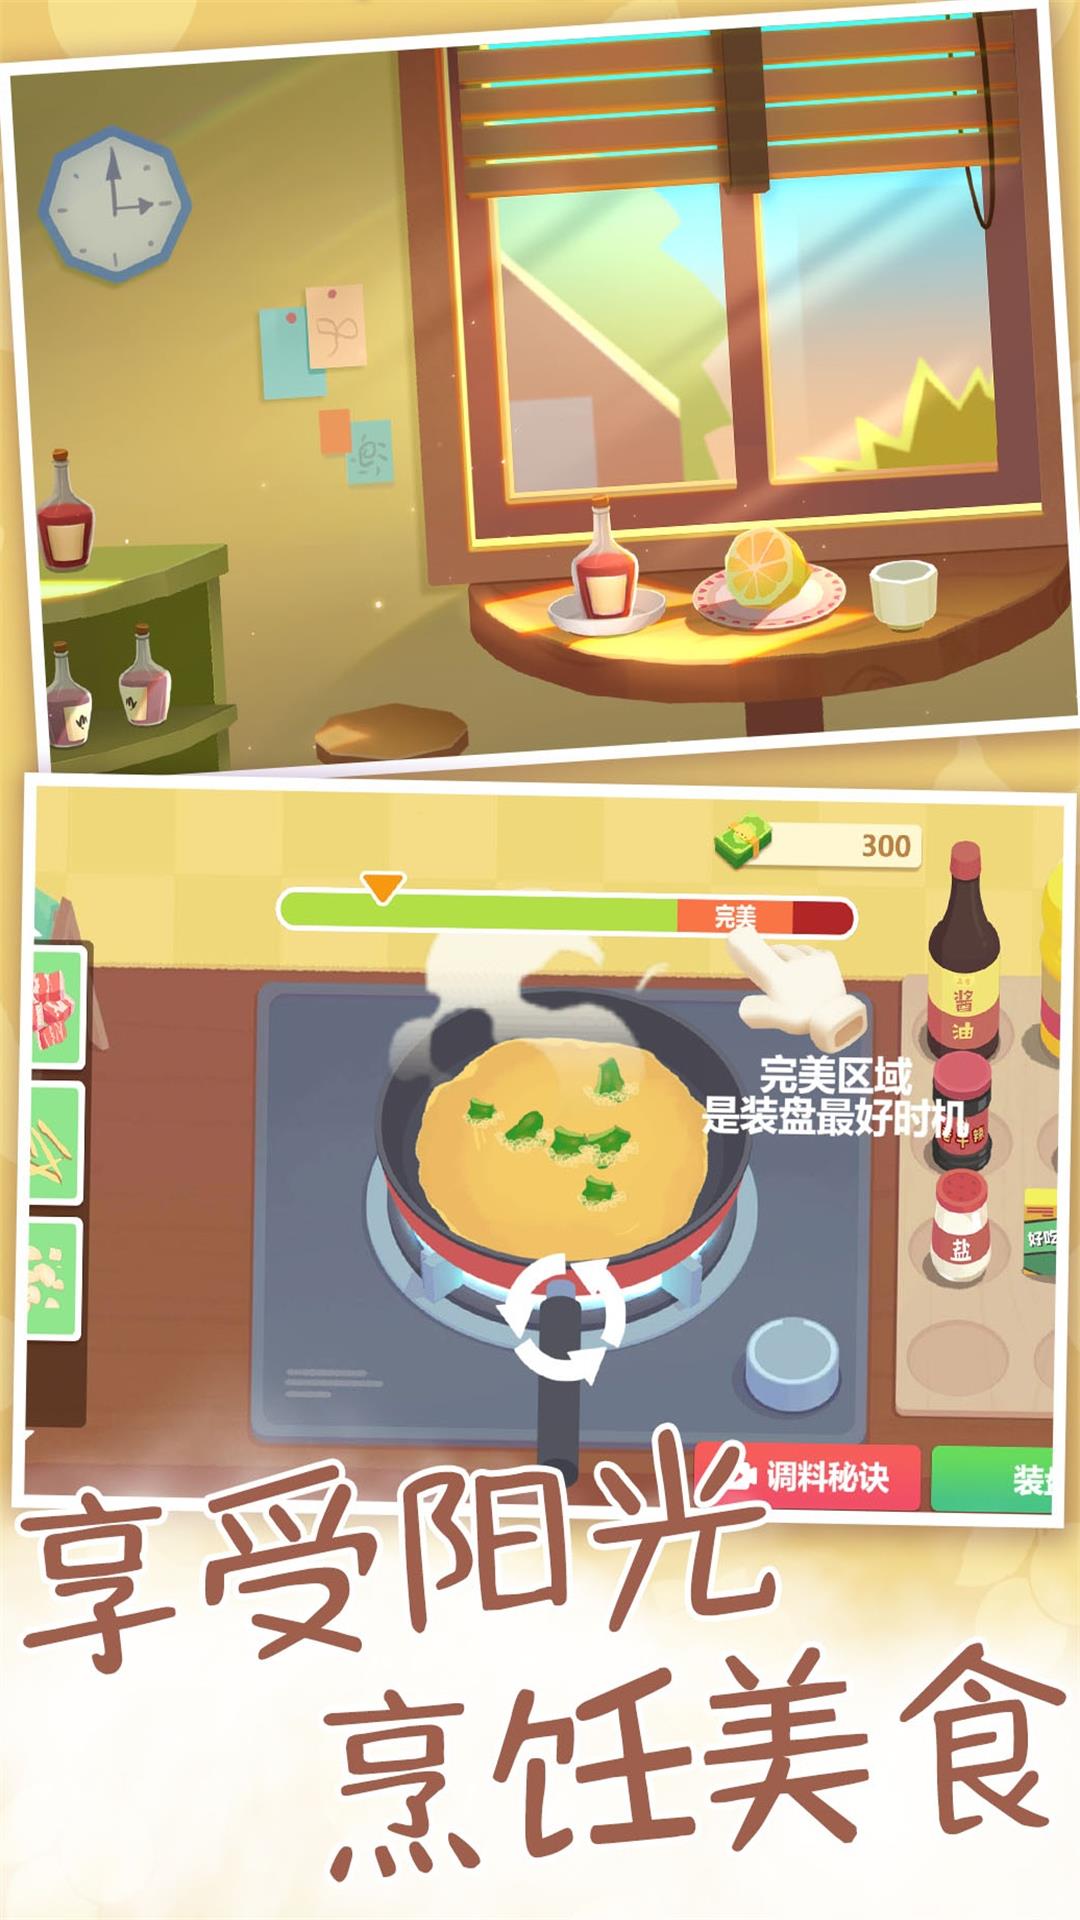 奶奶教我做菜-奶奶的食谱 v2.12.8-一款模拟烹饪的休闲游戏